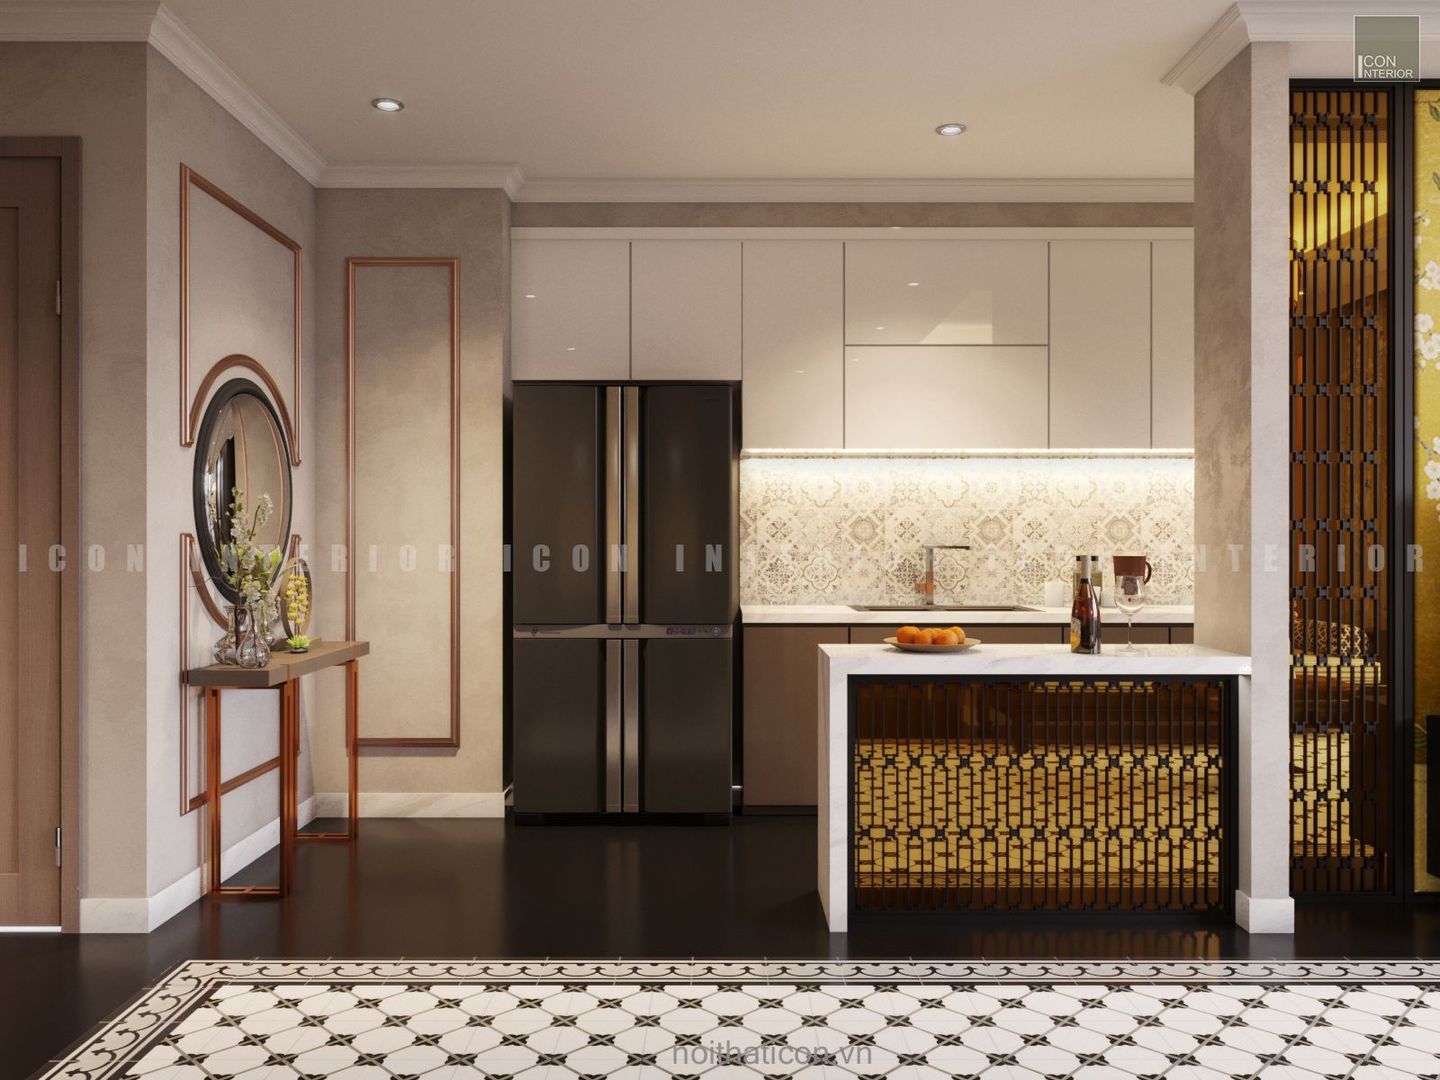 Nội thất căn hộ Vinhomes Central Park thiết kế theo phong cách Đông Dương, ICON INTERIOR ICON INTERIOR Nhà bếp phong cách châu Á